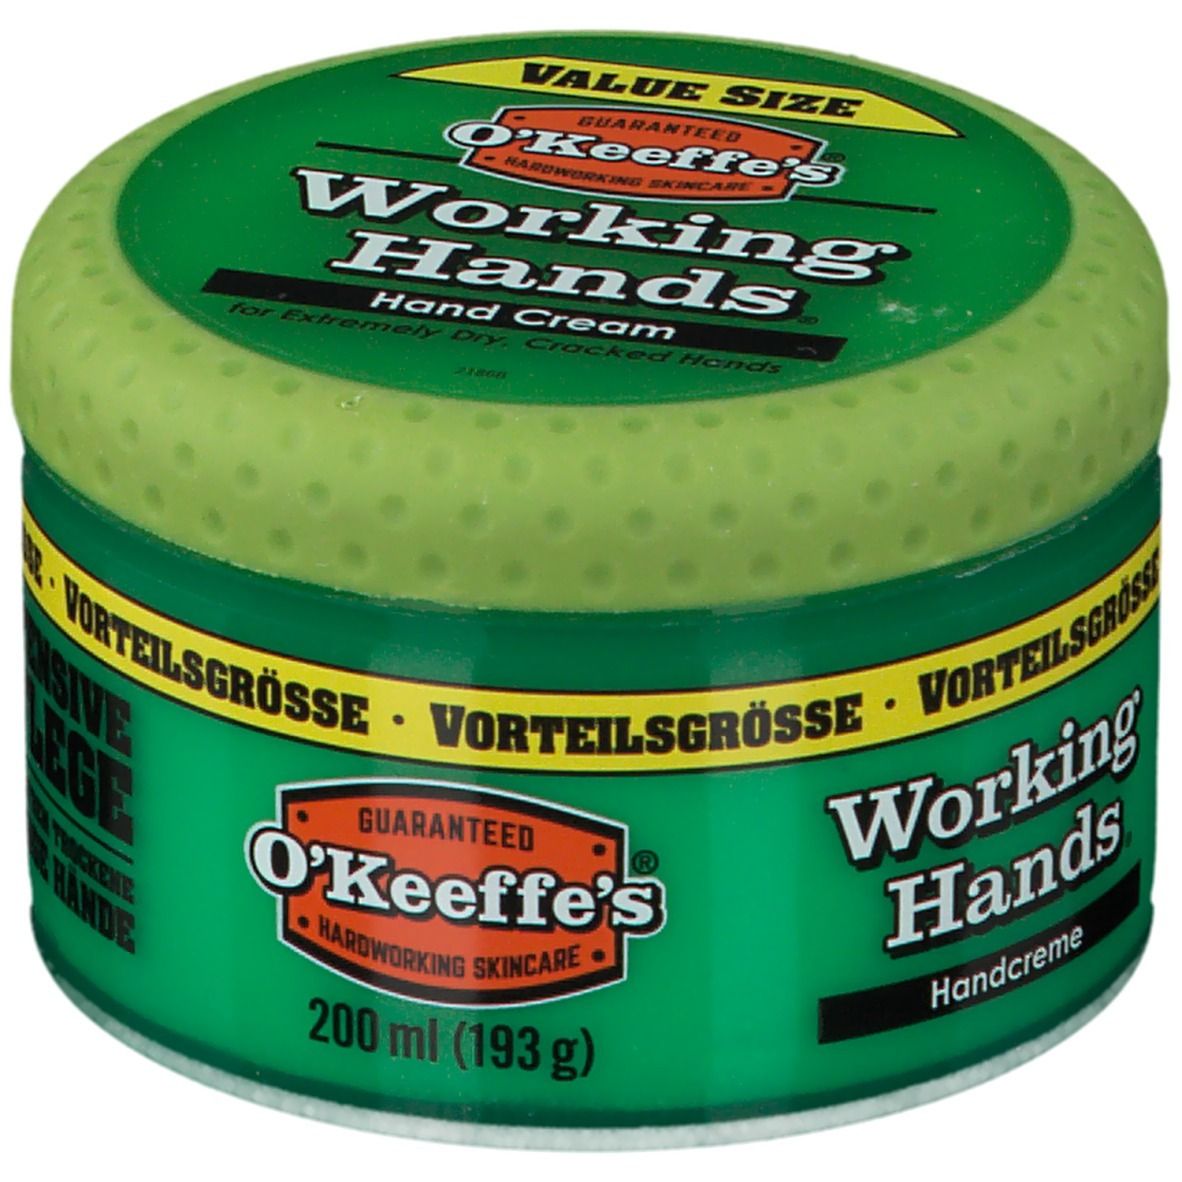 O'Keeffes's Working Hands Crème pour les mains